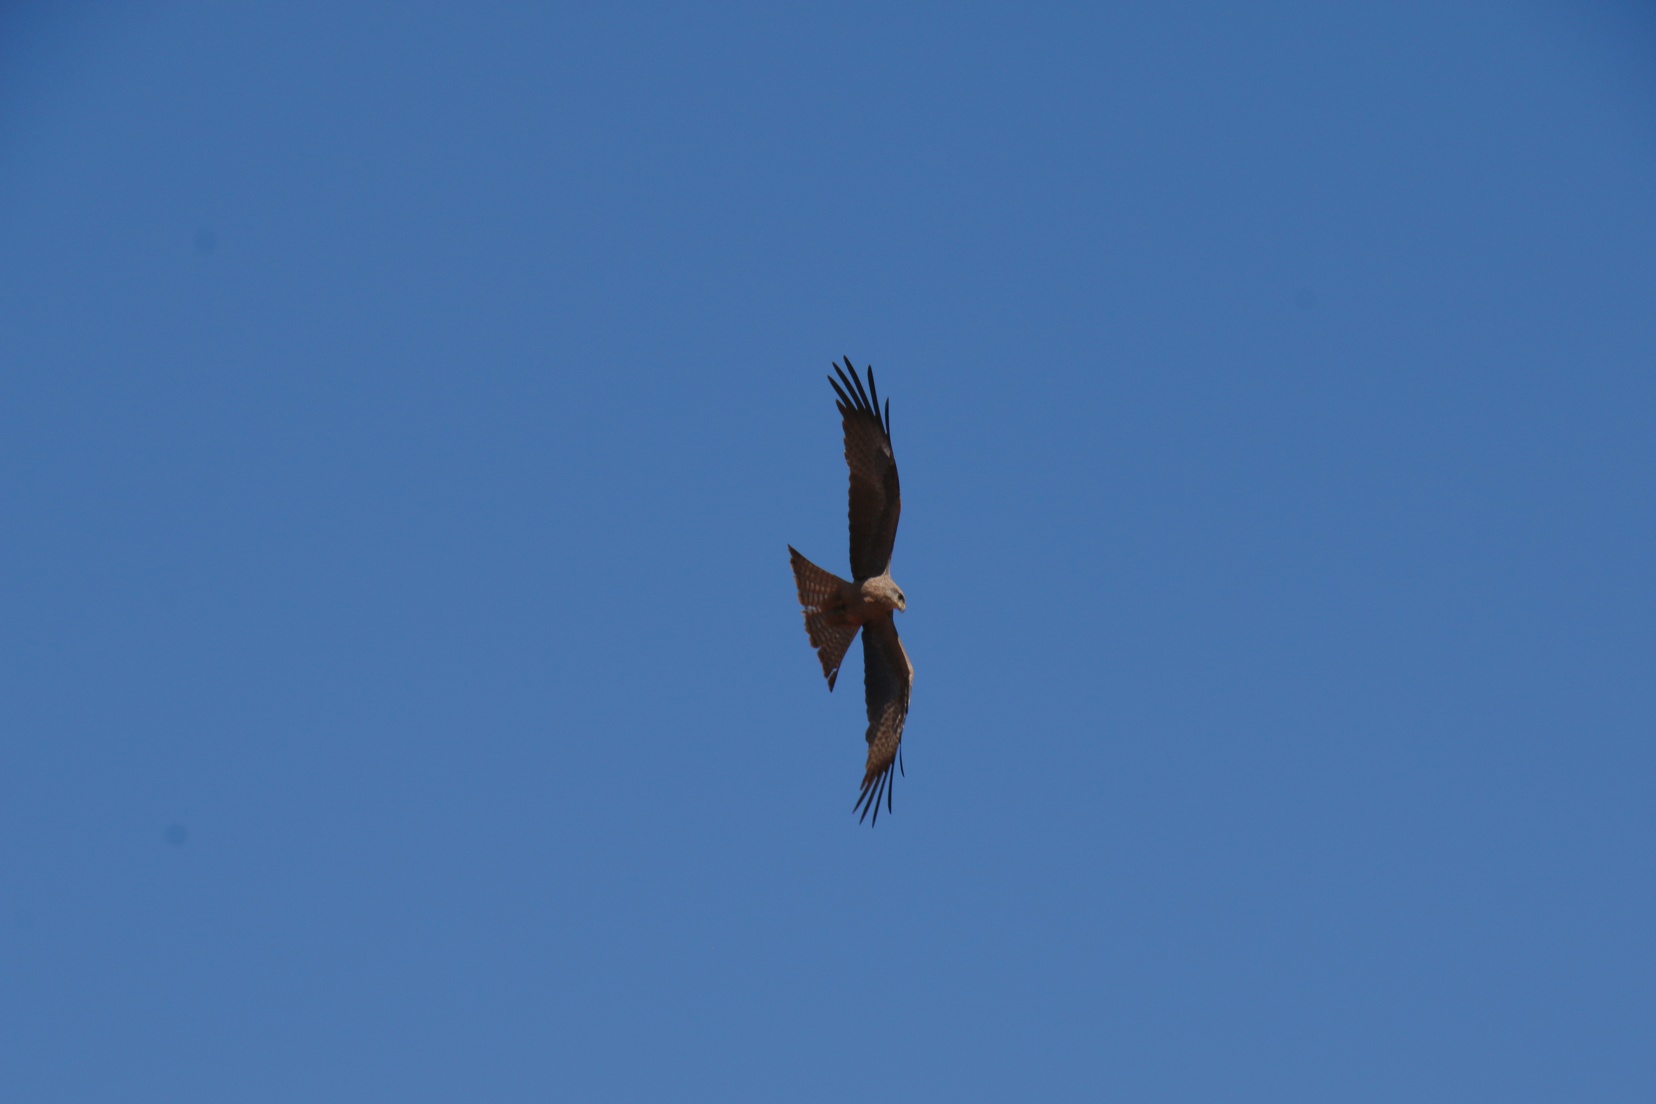 Kite circling at Beefwood Park